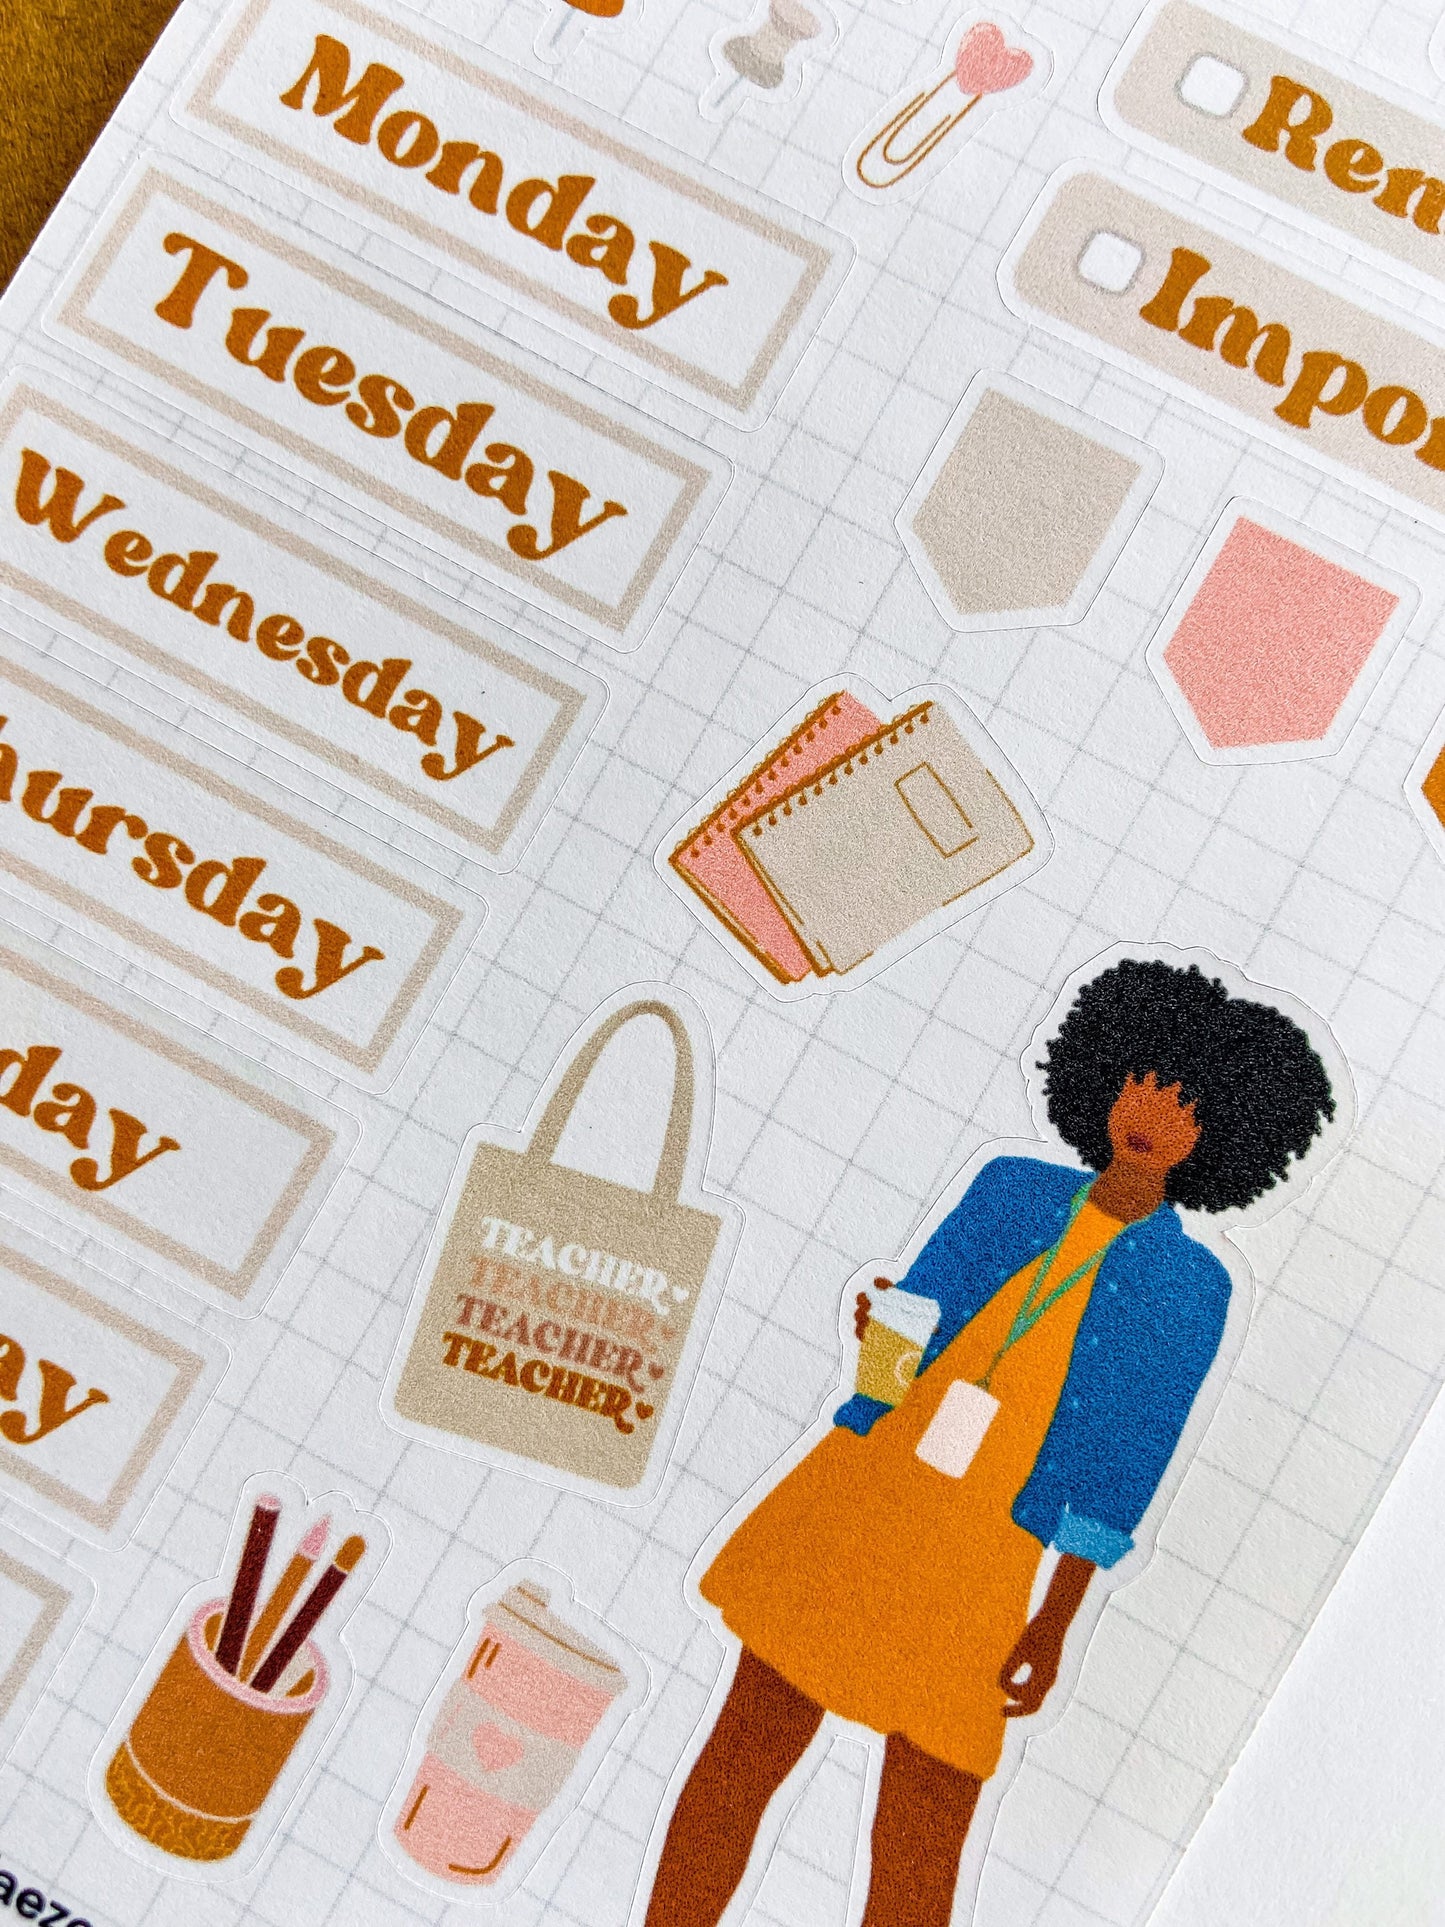 Teacher Planner Stickers, Teacher Life Sticker Kit, Teacher Stickers, Black Girl Planner Stickers, Educator Stickers, Black Girl Stickers